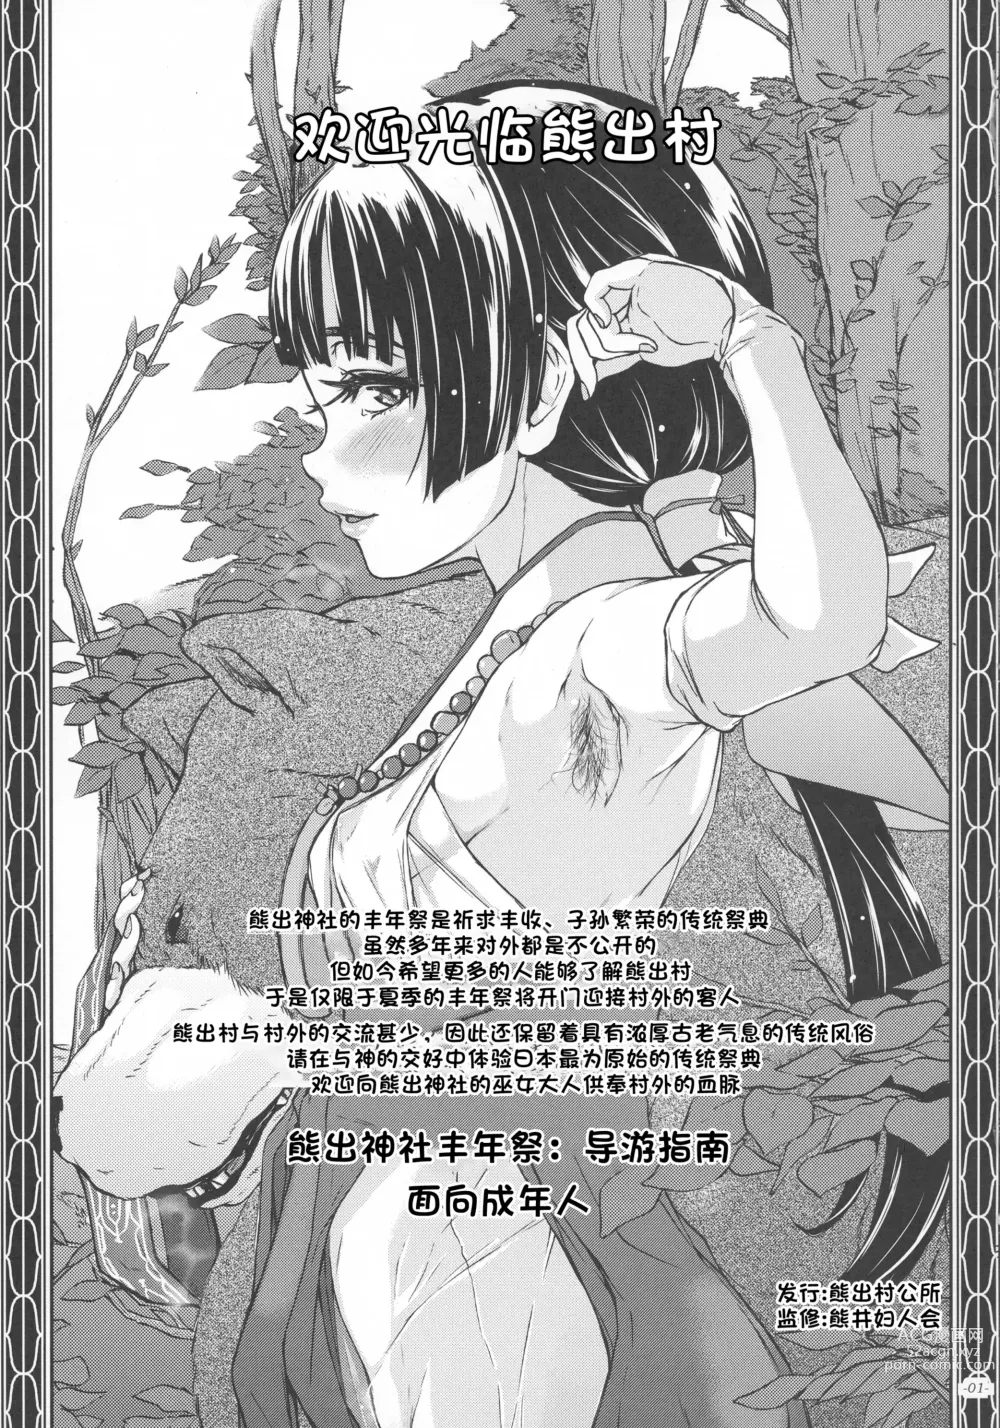 Page 3 of doujinshi Yami Matsuri Kuma Miko Shinji Shiriasobi Uragatari